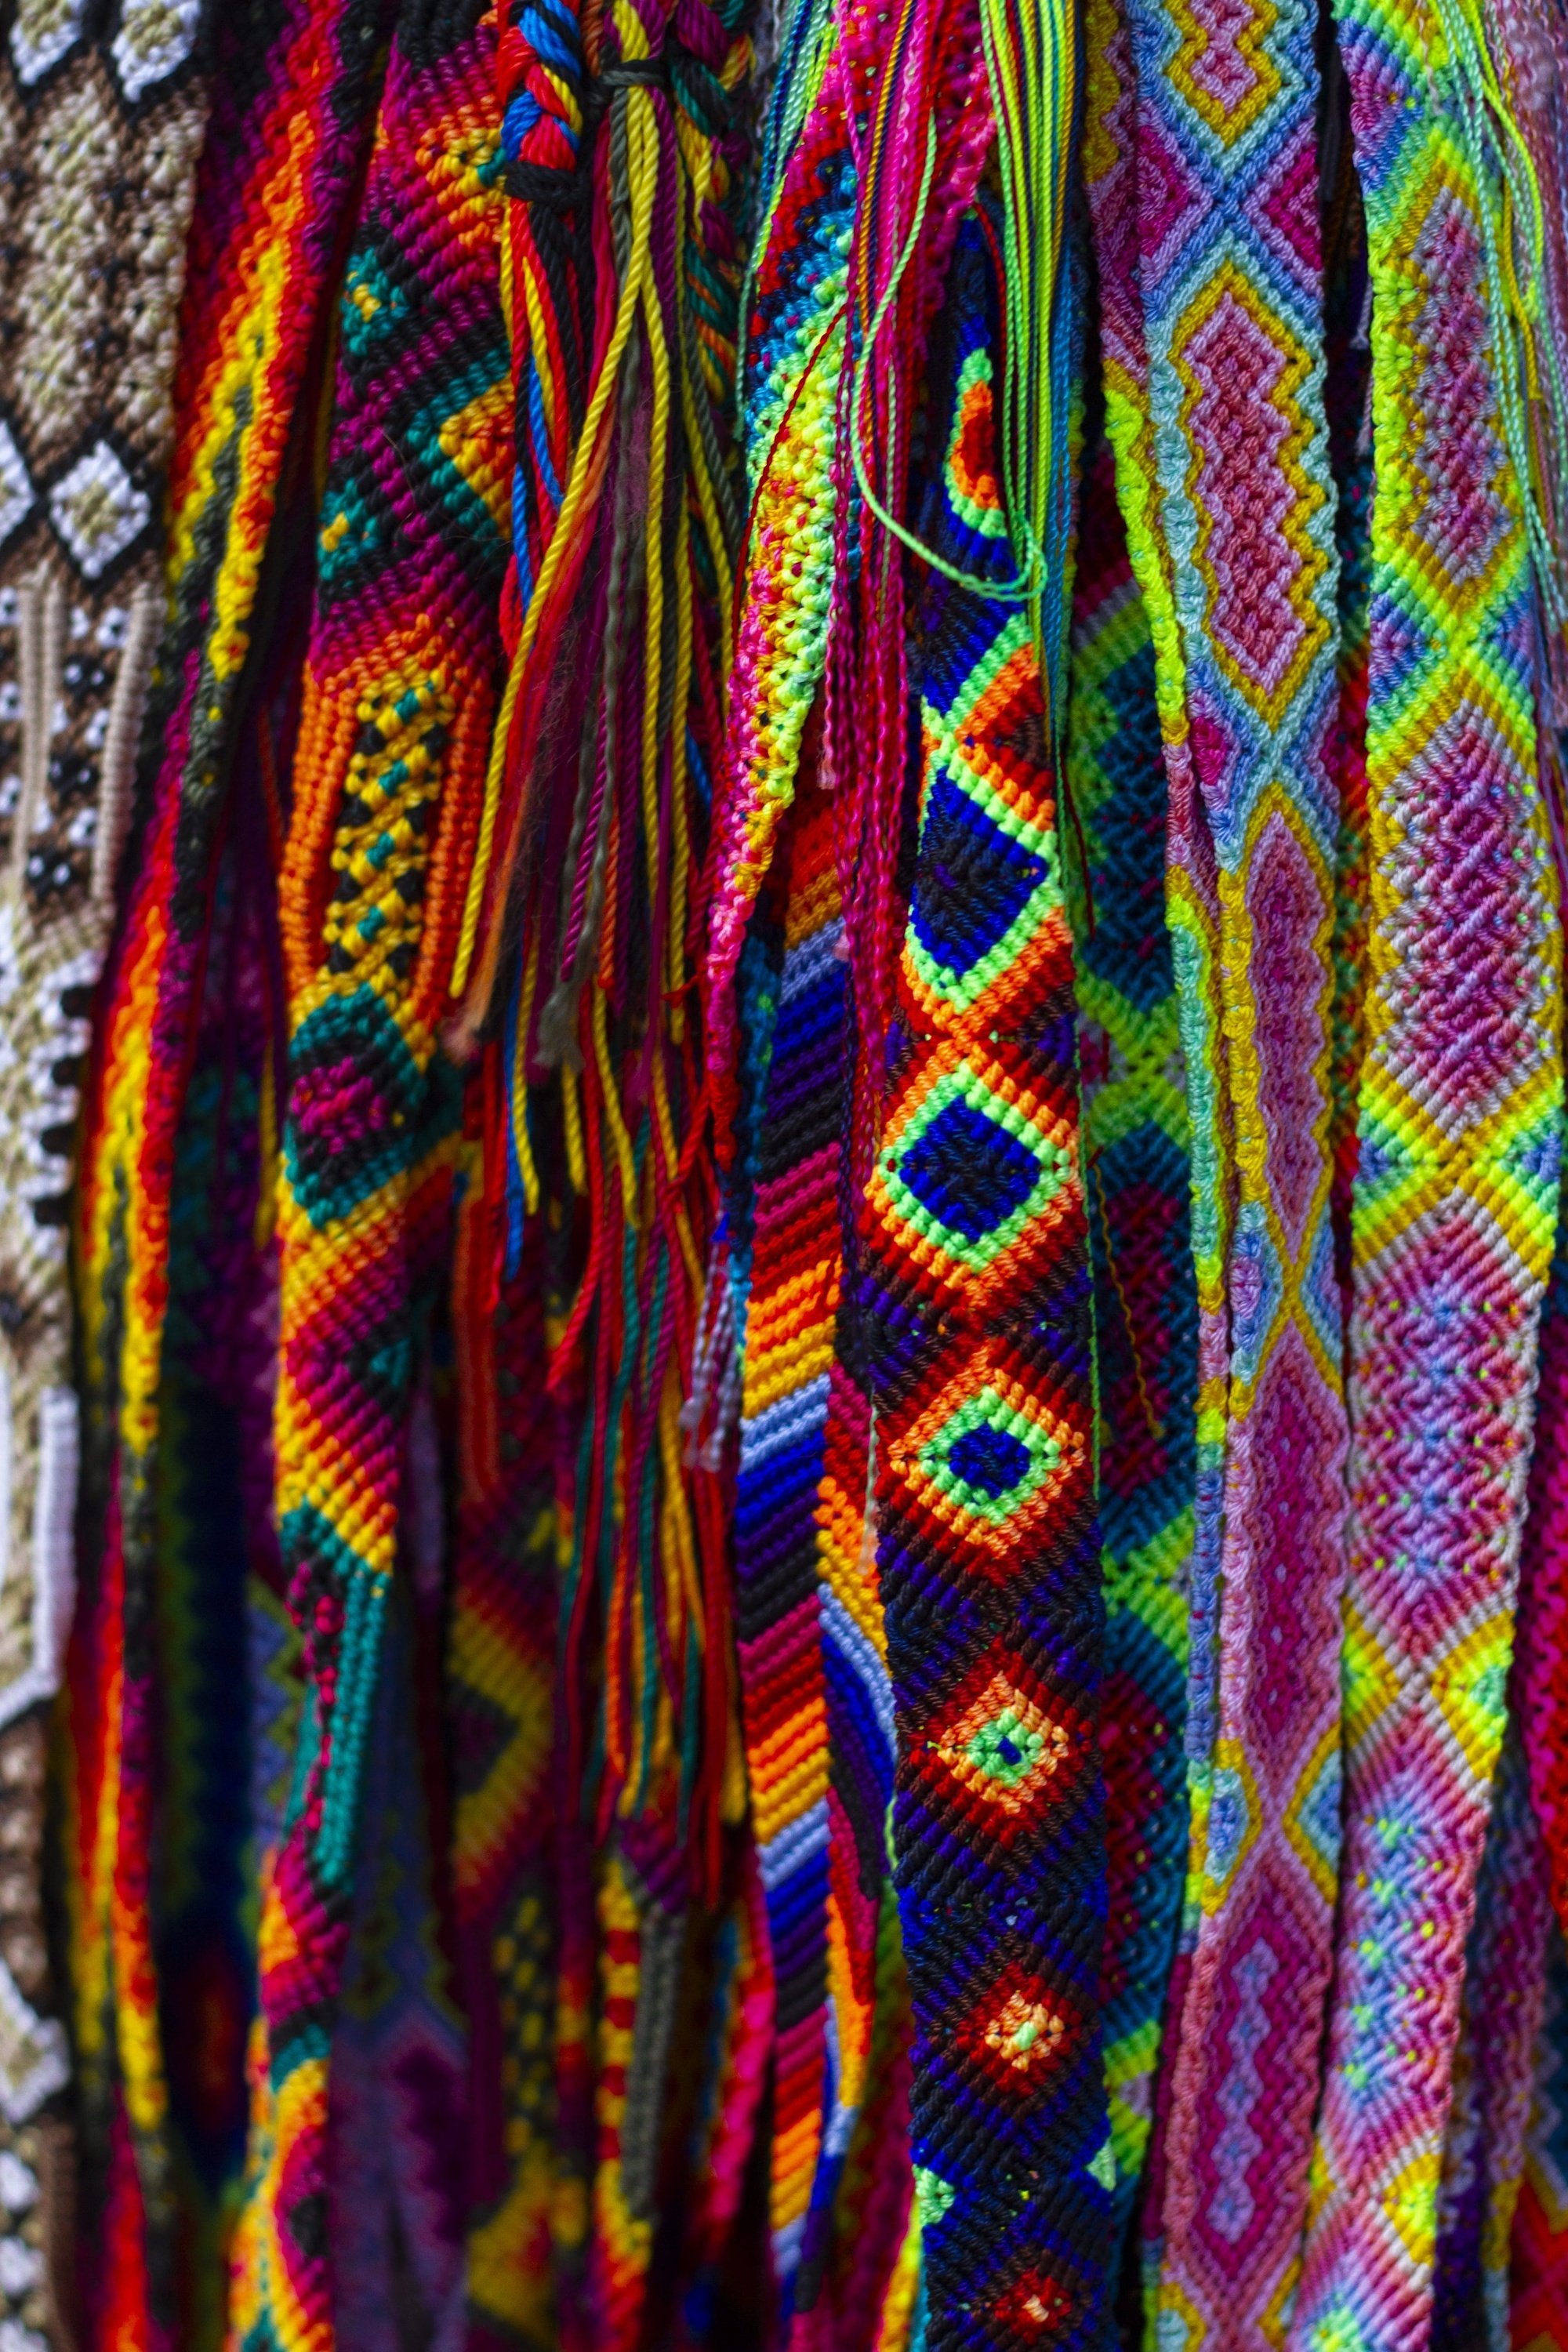 Imagen de textiles mayas coloridos y hechos a mano